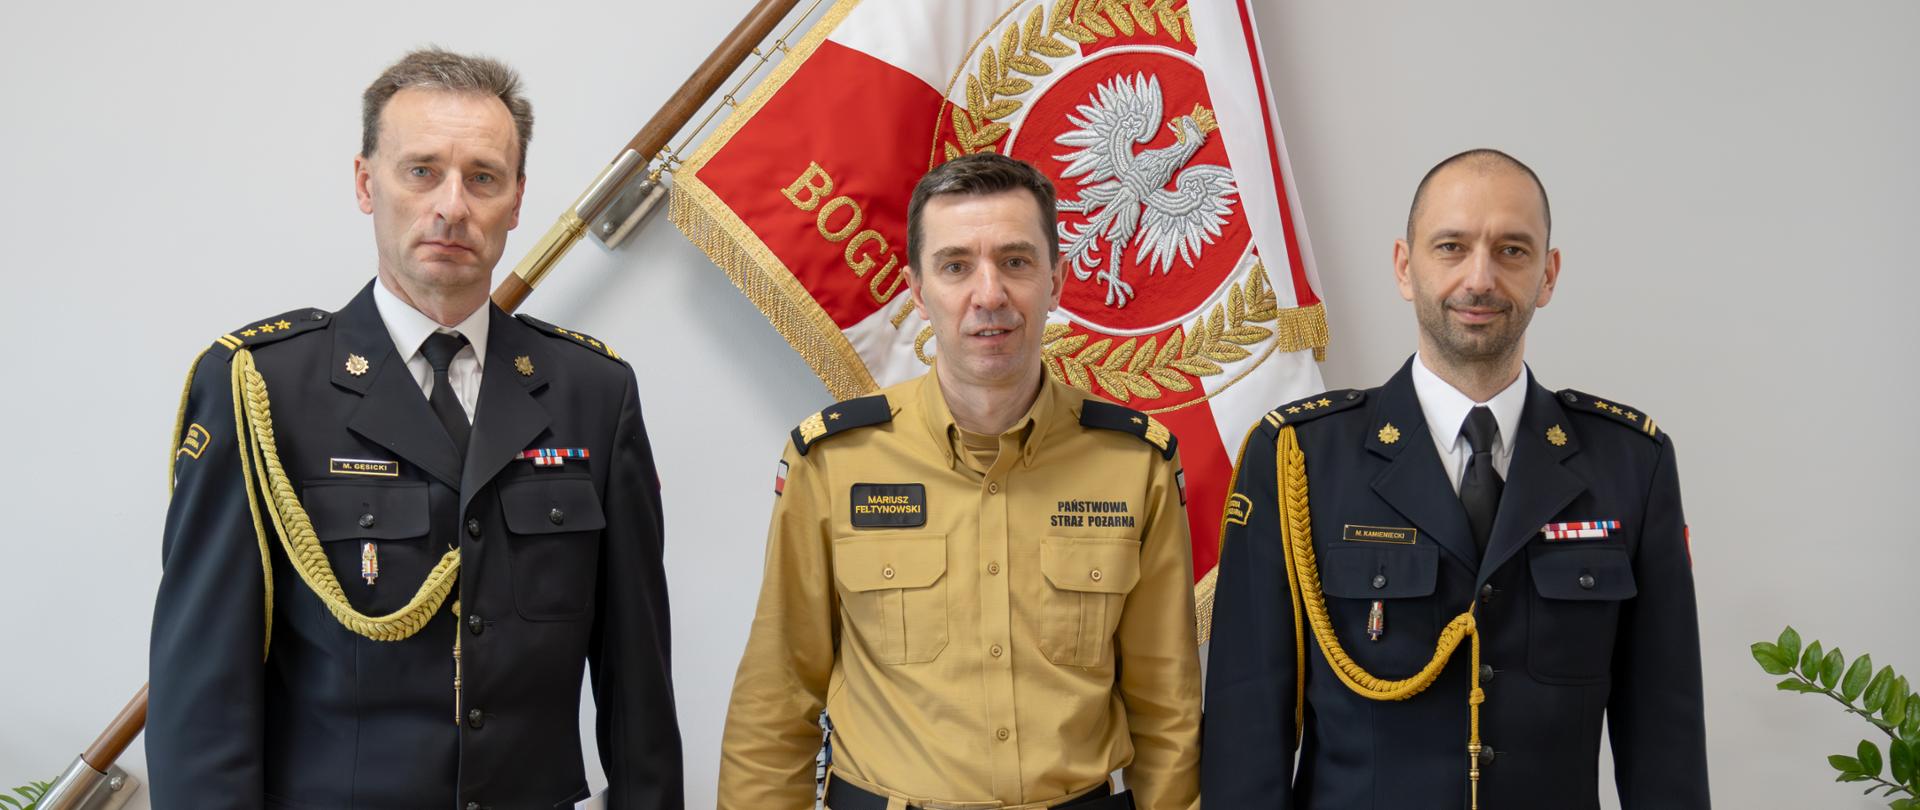 Trzech oficerów Państwowej Straży Pożarnej pozuje do pamiątkowej fotografii. Na zdjęciu stoi komendant główny PSP, warmińsko-mazurski komendant wojewódzki oraz pełniący obowiązki zastępcy warmińsko-mazurskiego komendanta wojewódzkiego.